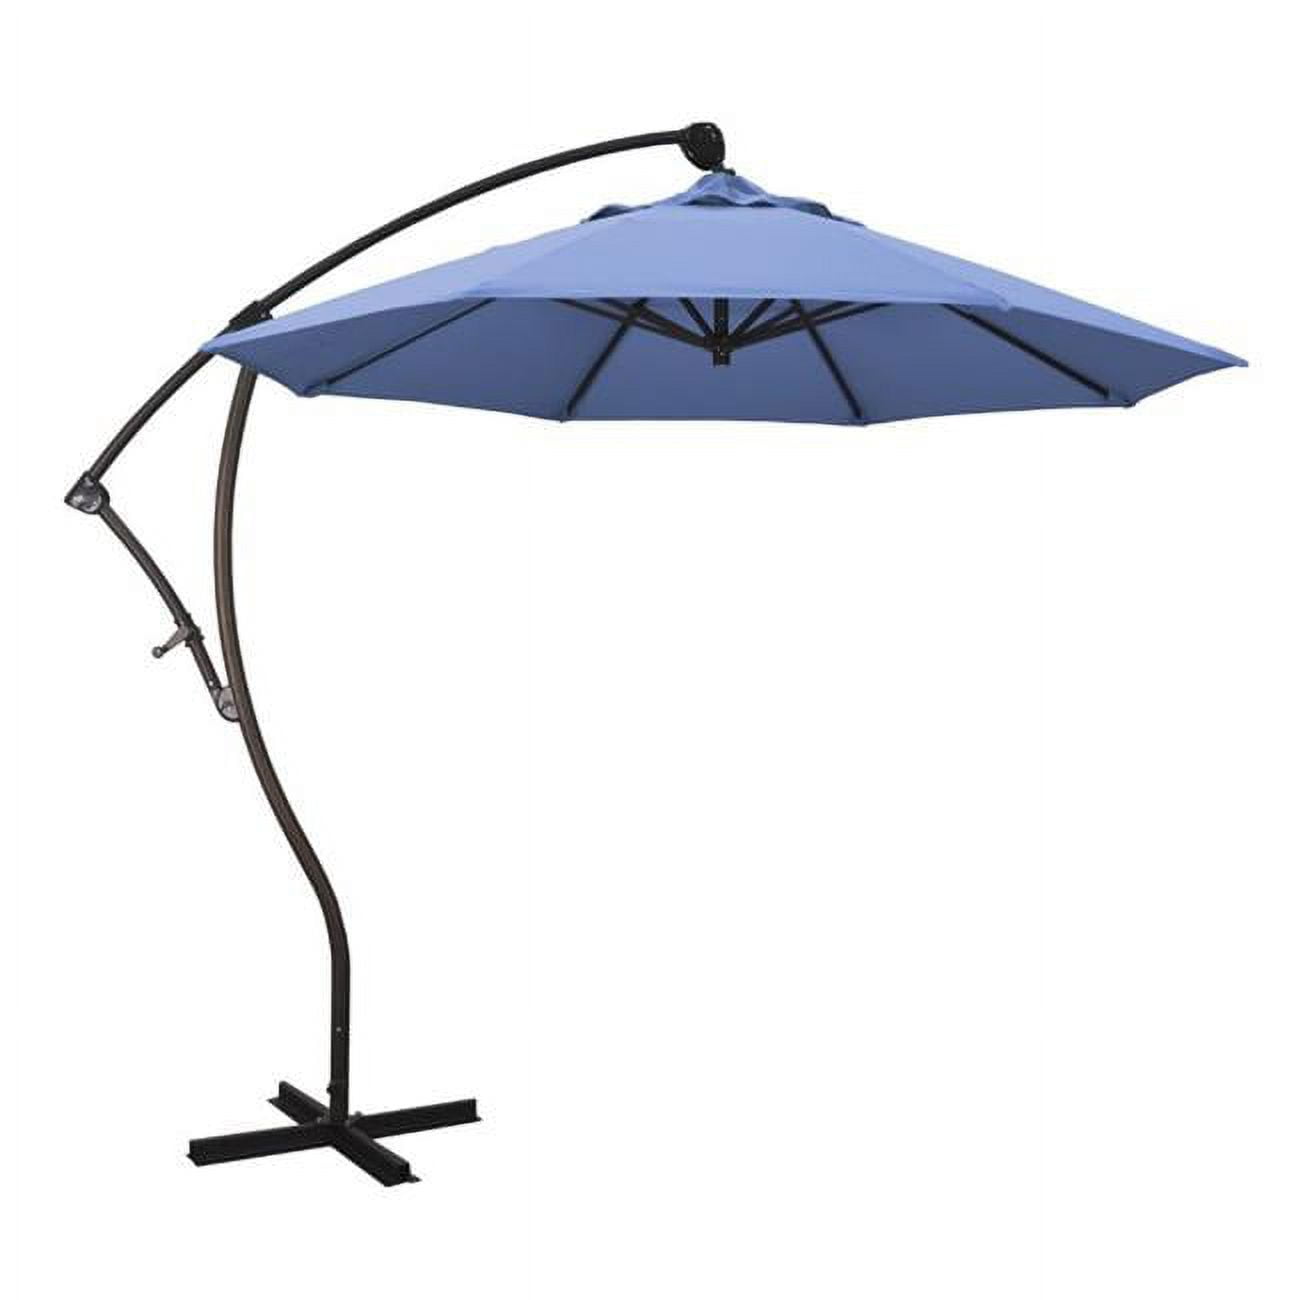 Californiaumbrella Ba908117-f26 Cantilever Umbrella, Frost Blue - 9 Ft. X 8 Ribs